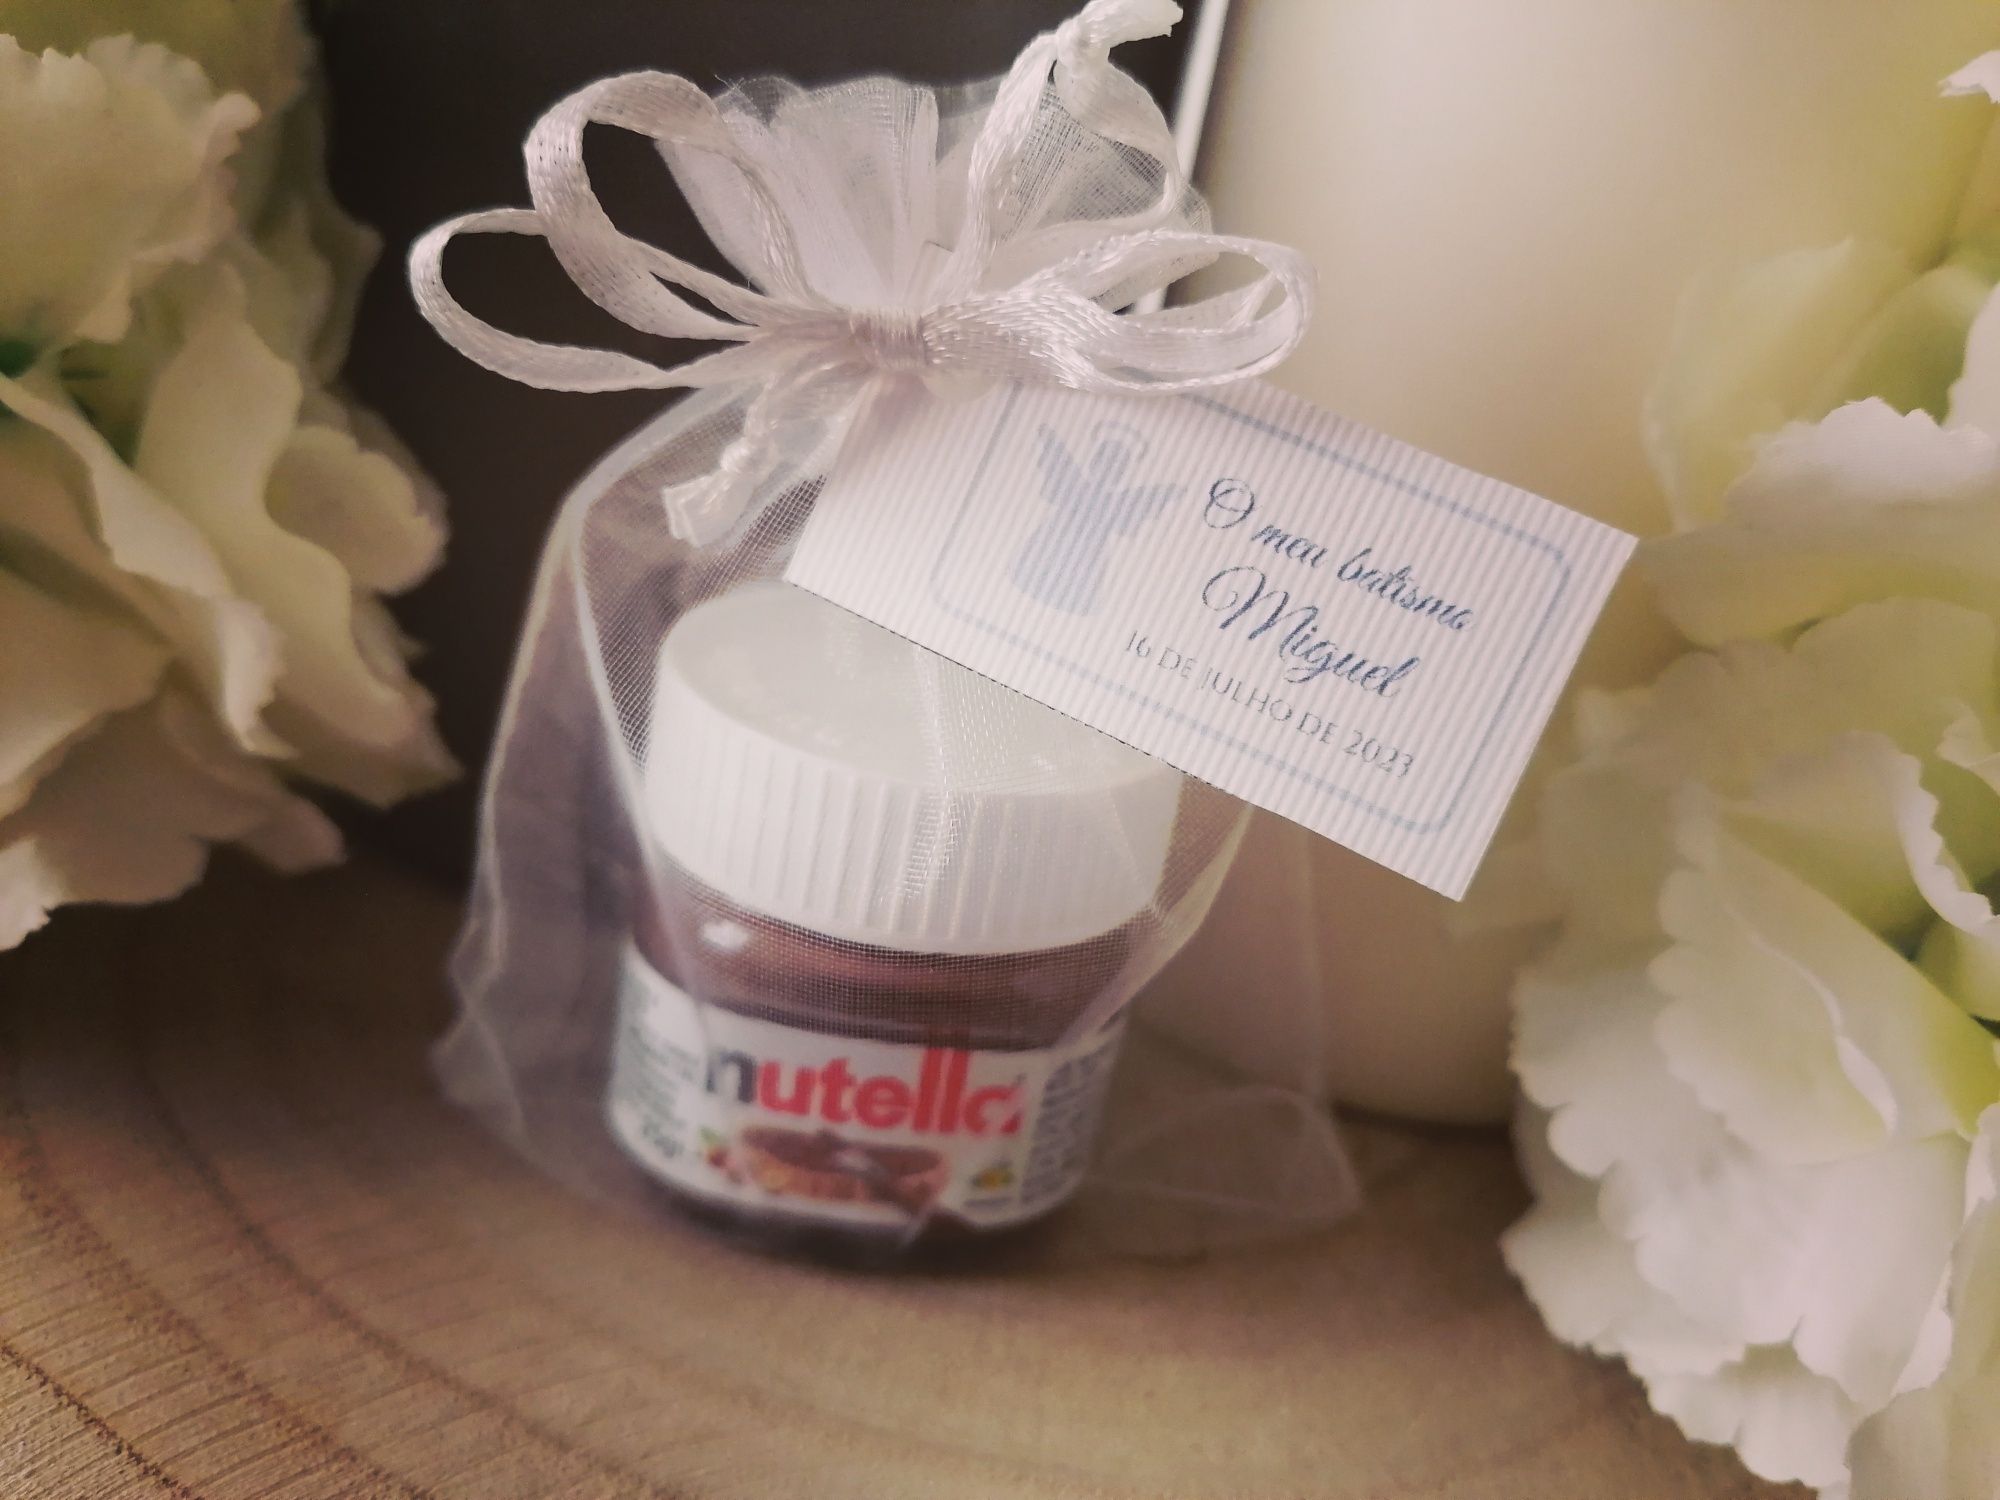 Presentes e Lembranças Personalizadas - Mini Nutellas Encantadoras!